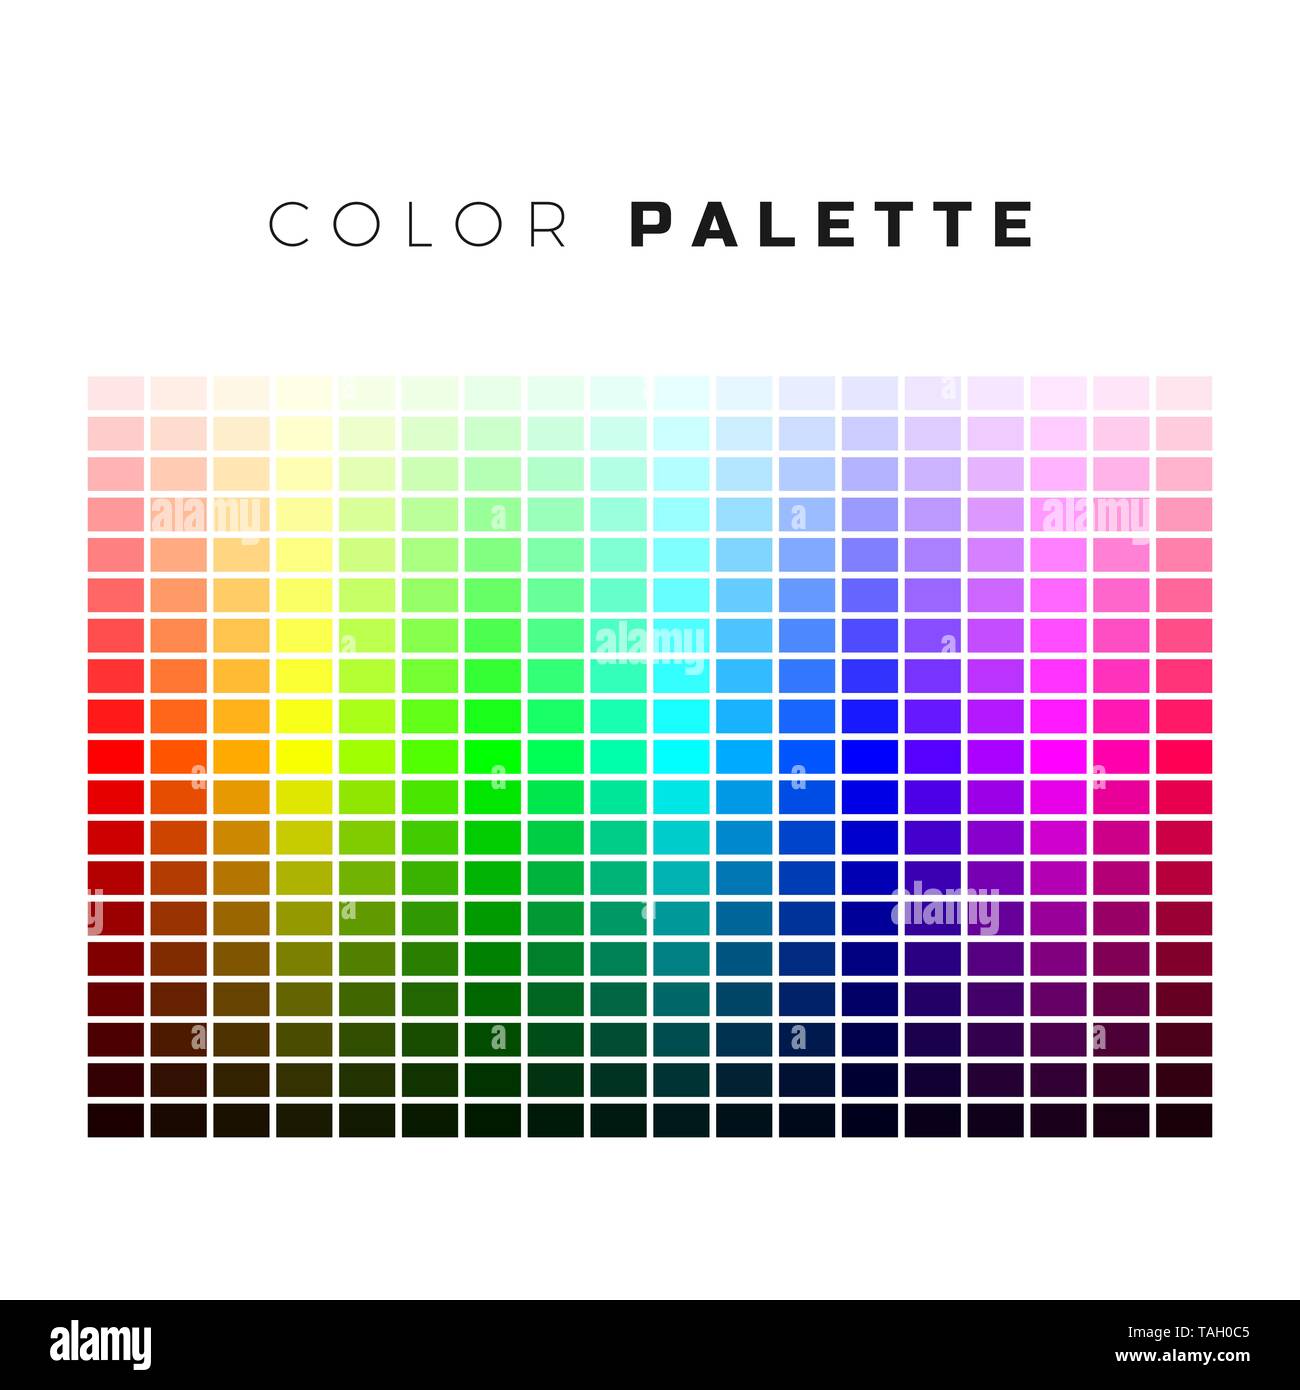 Palette colorate. Set di colori della tavolozza arcobaleno. Uno spettro completo di colori. Illustrazione di vettore isolato su sfondo bianco Illustrazione Vettoriale